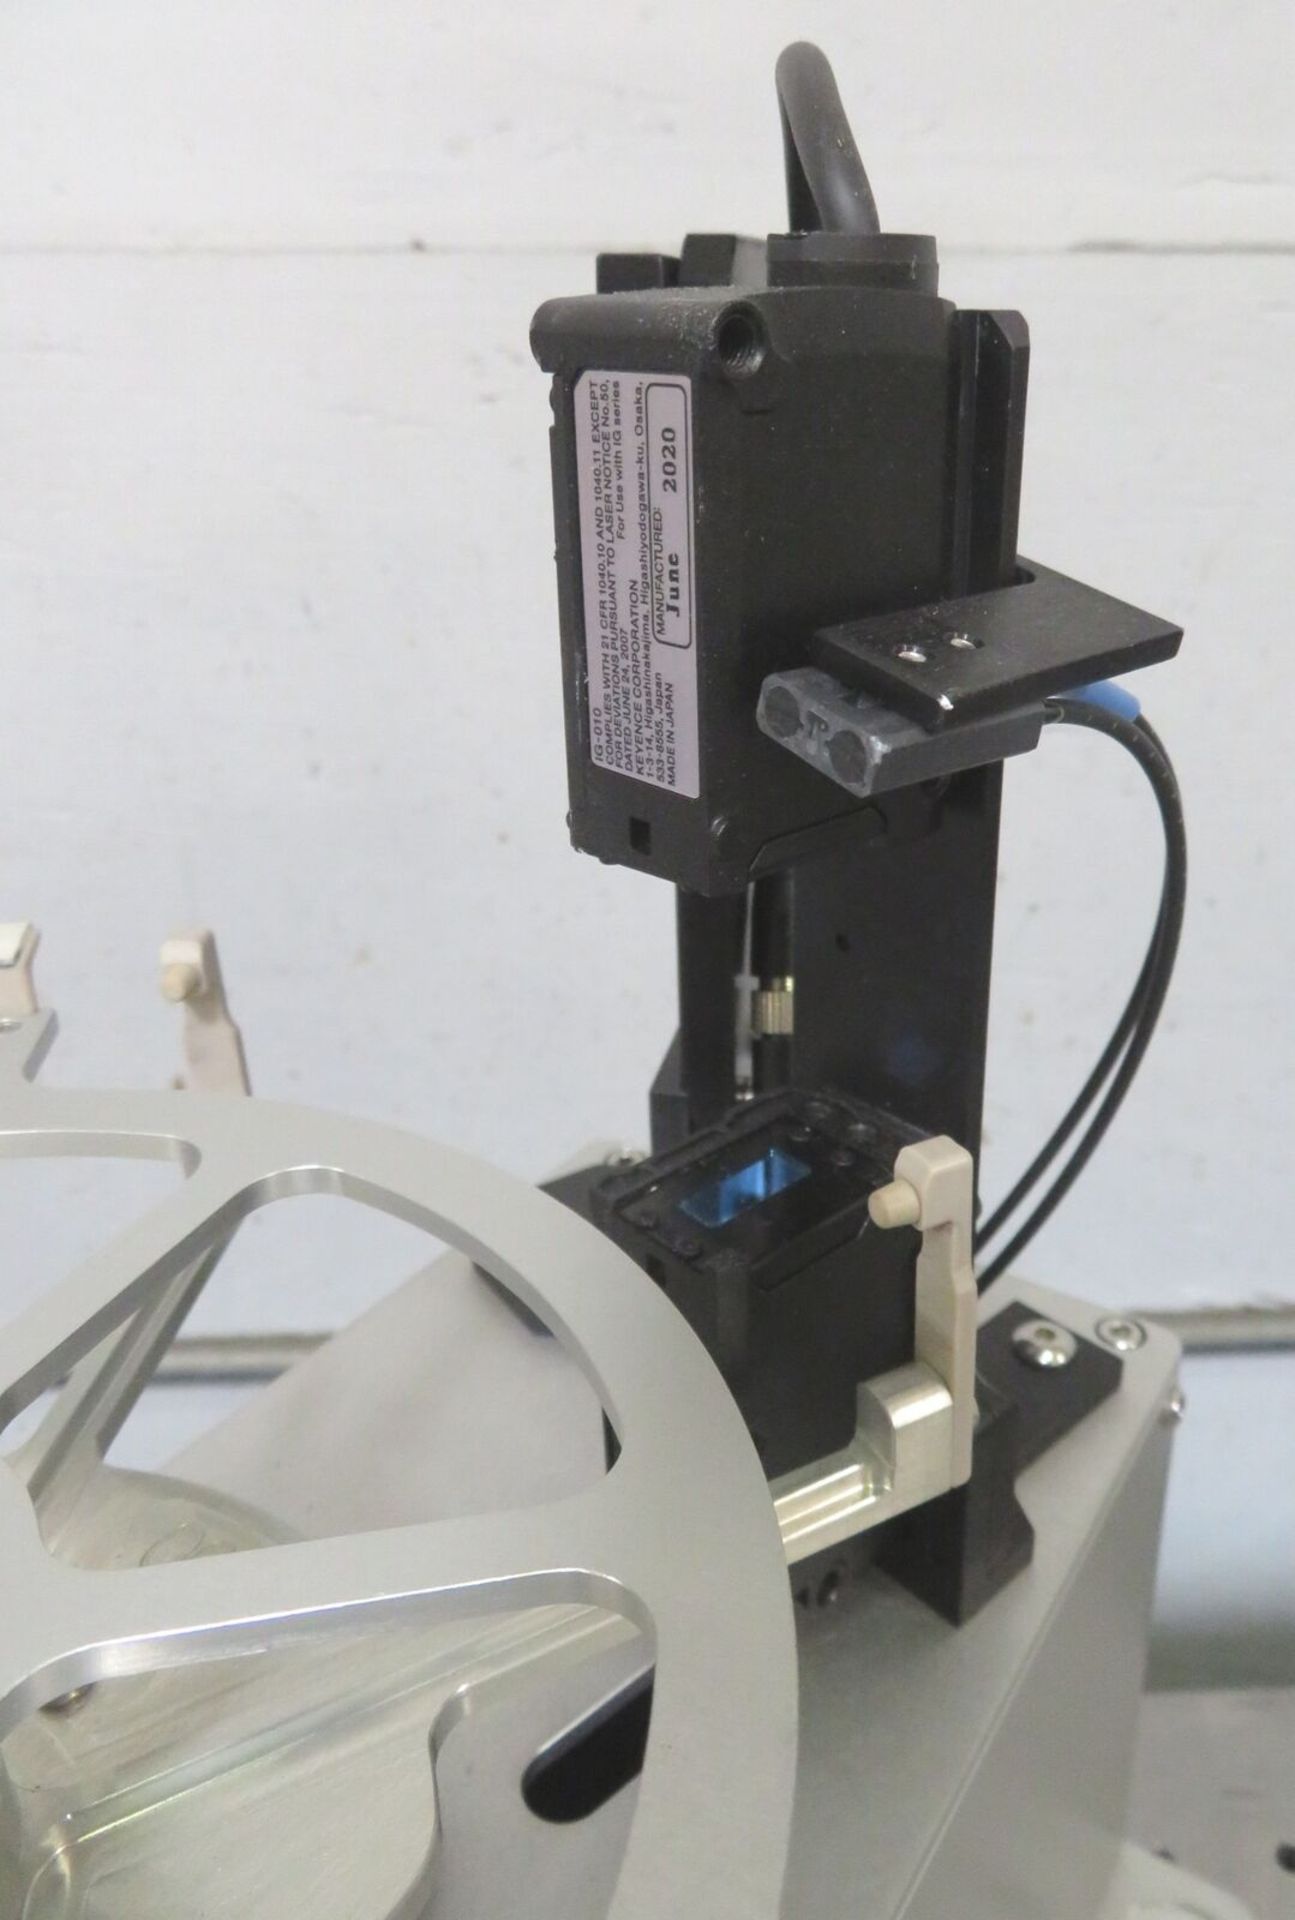 Wafer Prealigner Pre-Aligner 150mm + 200mm, Keyence IG-101 Laser Sensor - Gilroy - Image 5 of 8